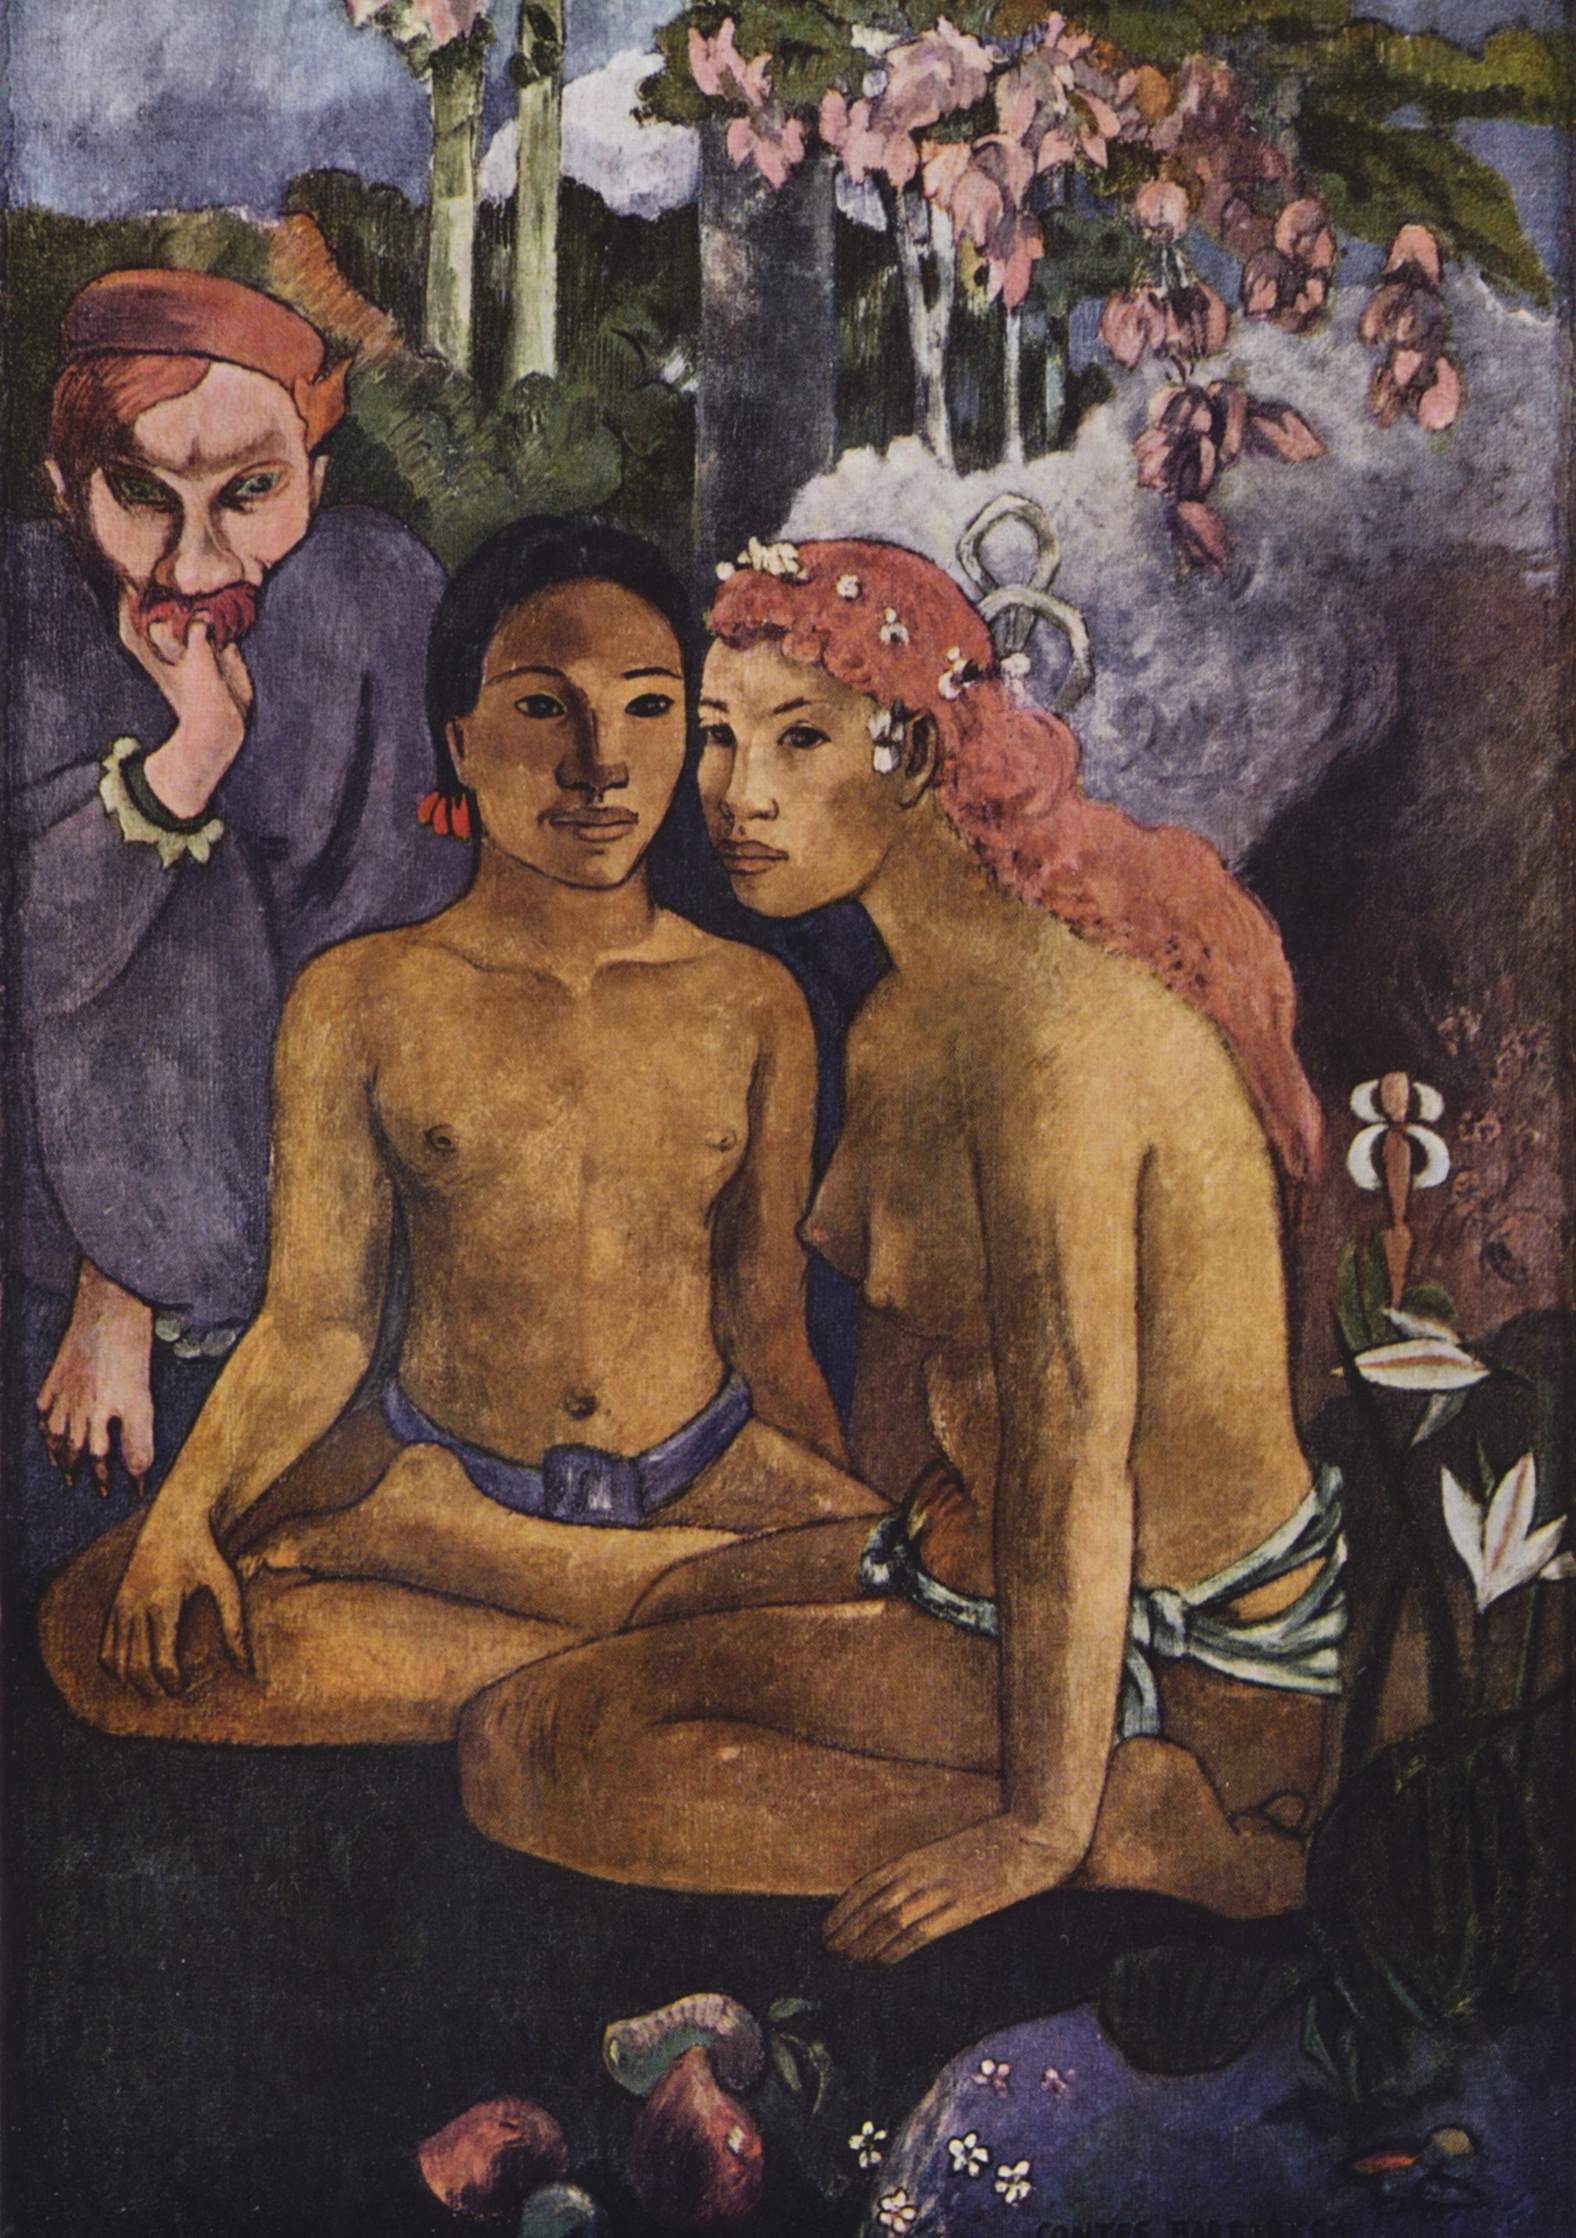 Wrede Geschiedenis (Exotisch Gezegde) by Paul Gauguin - 1902 - 130 × 92 cm Museum Folkwang